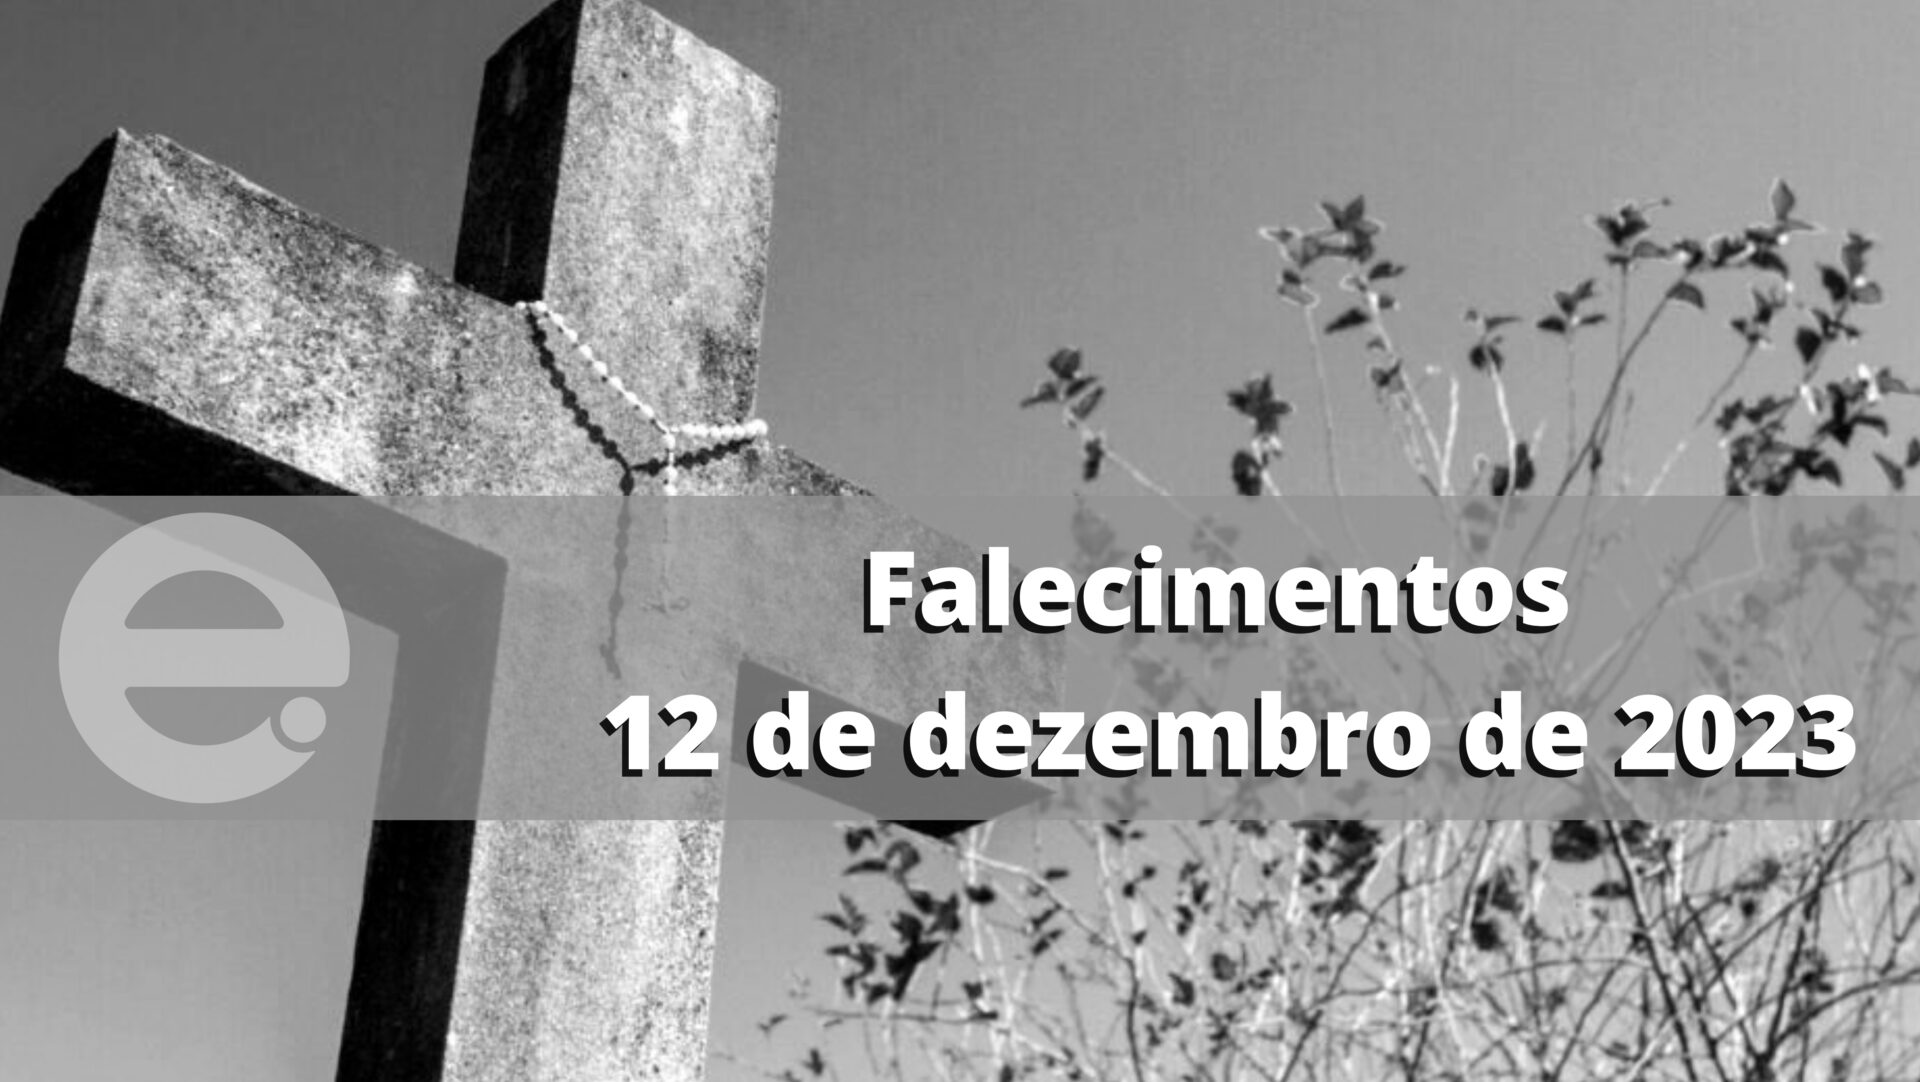 Confira os falecimentos desta terça-feira, 12 de dezembro de 2023, em Limeira